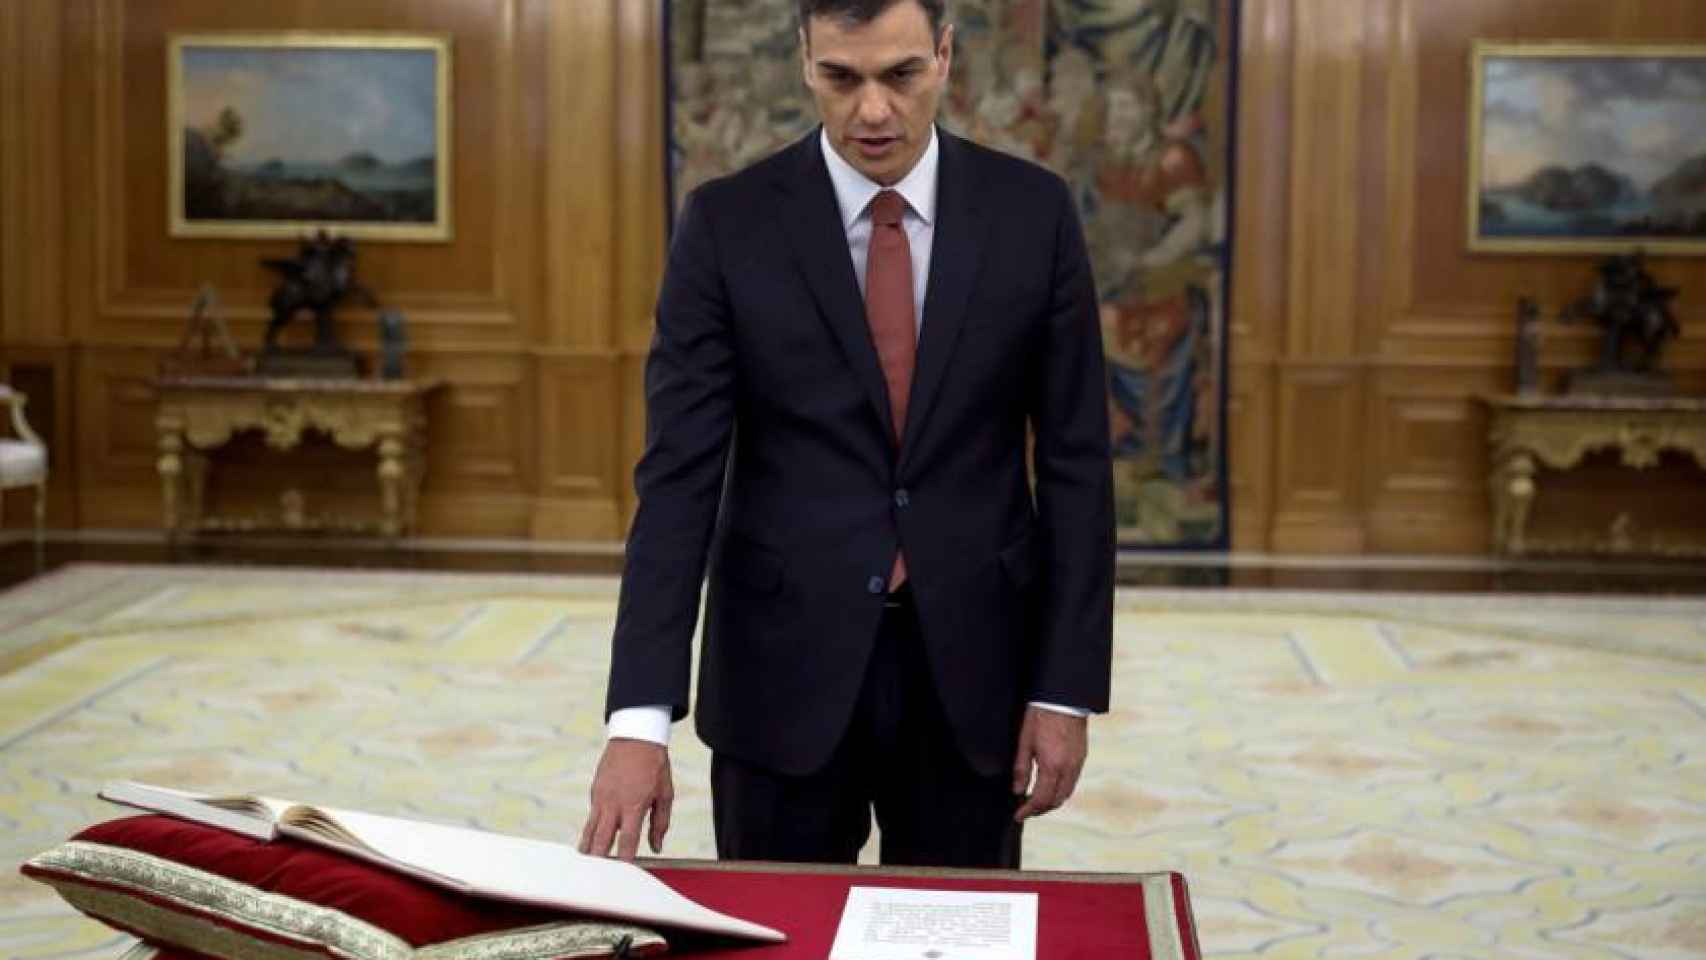 Pedro Sánchez promete su cargo de presidente del Gobierno sobre la Constitución.